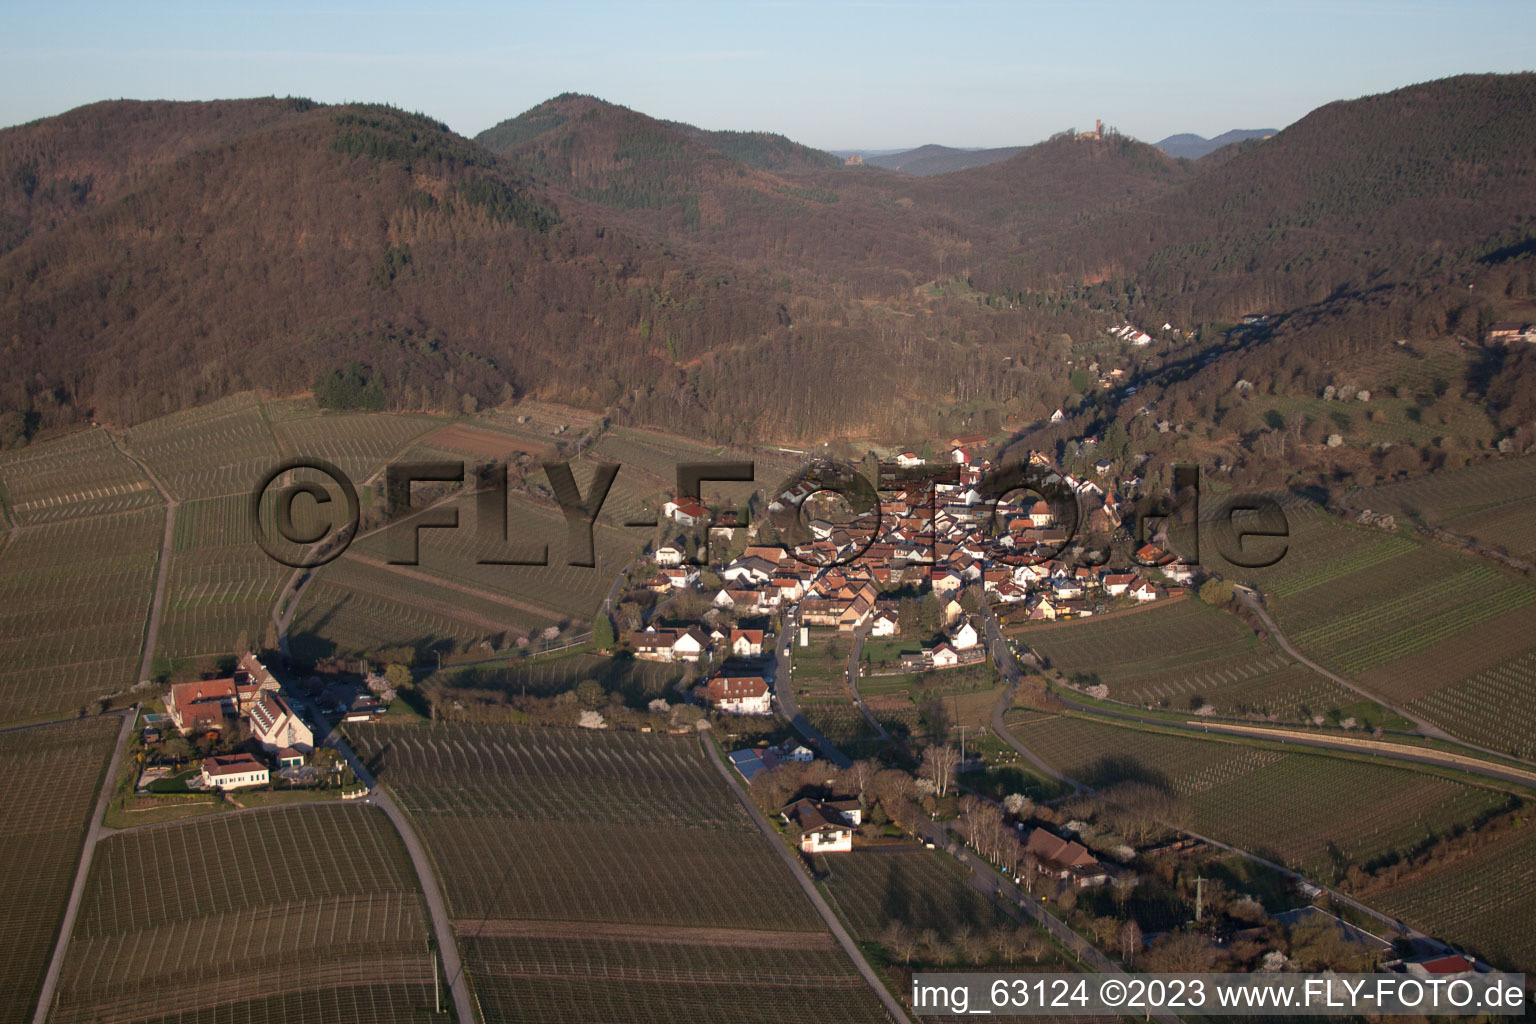 Leinsweiler im Bundesland Rheinland-Pfalz, Deutschland von der Drohne aus gesehen